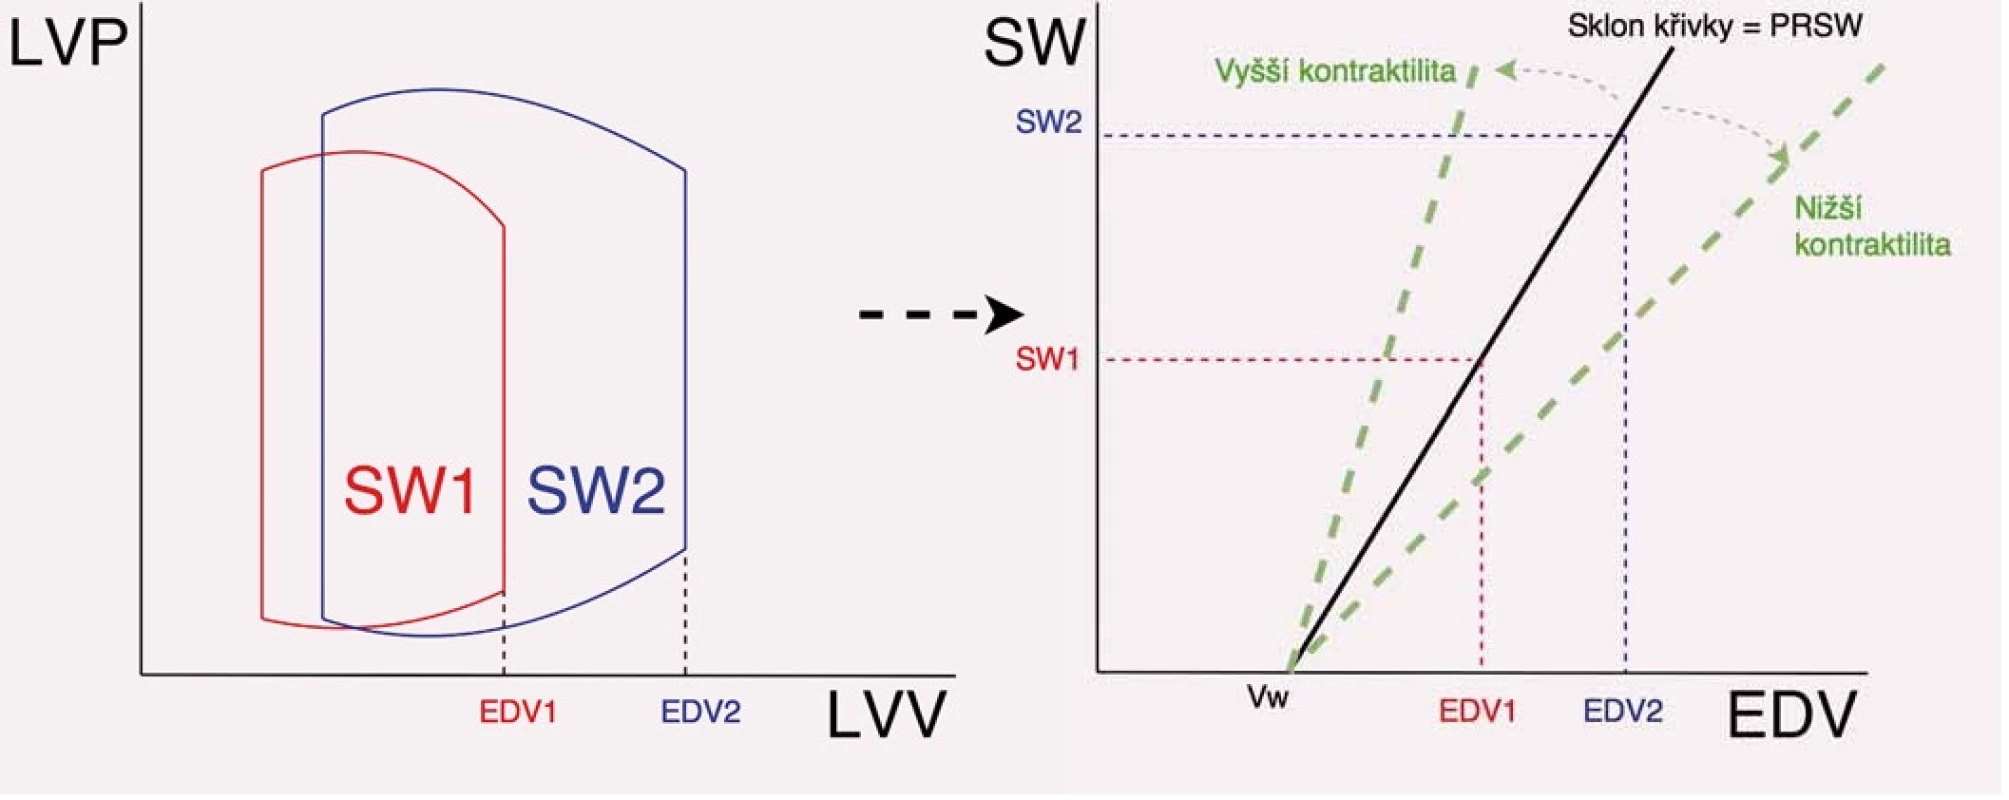 Způsob stanovení preload recruitable stroke work (PRSW) a význam sklonu křivky PRSW (Mw). Na obrázku vlevo je znázorněna křivka PV diagramu a změna tepové práce při různém enddiastolickém objemu, na obrázku vpravo je znázorněn způsob odečtu přímky PRSW a vztah Mw a kontraktility.